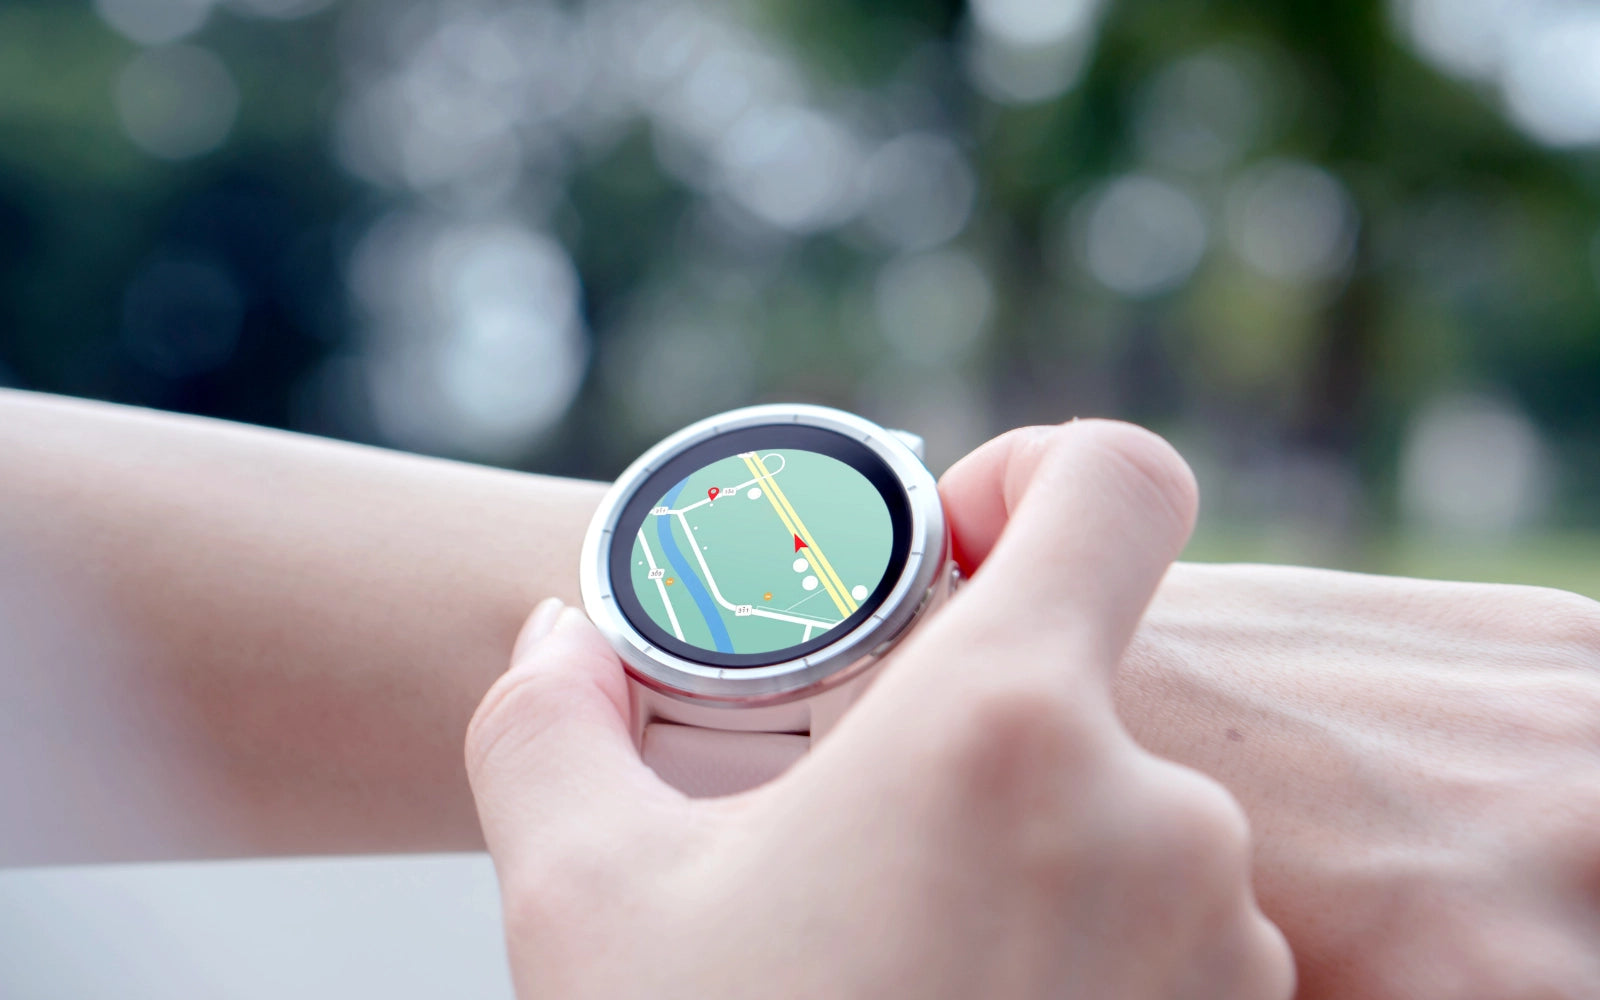 Smartwatch z mapami — kiedy warto zainwestować w taki model?